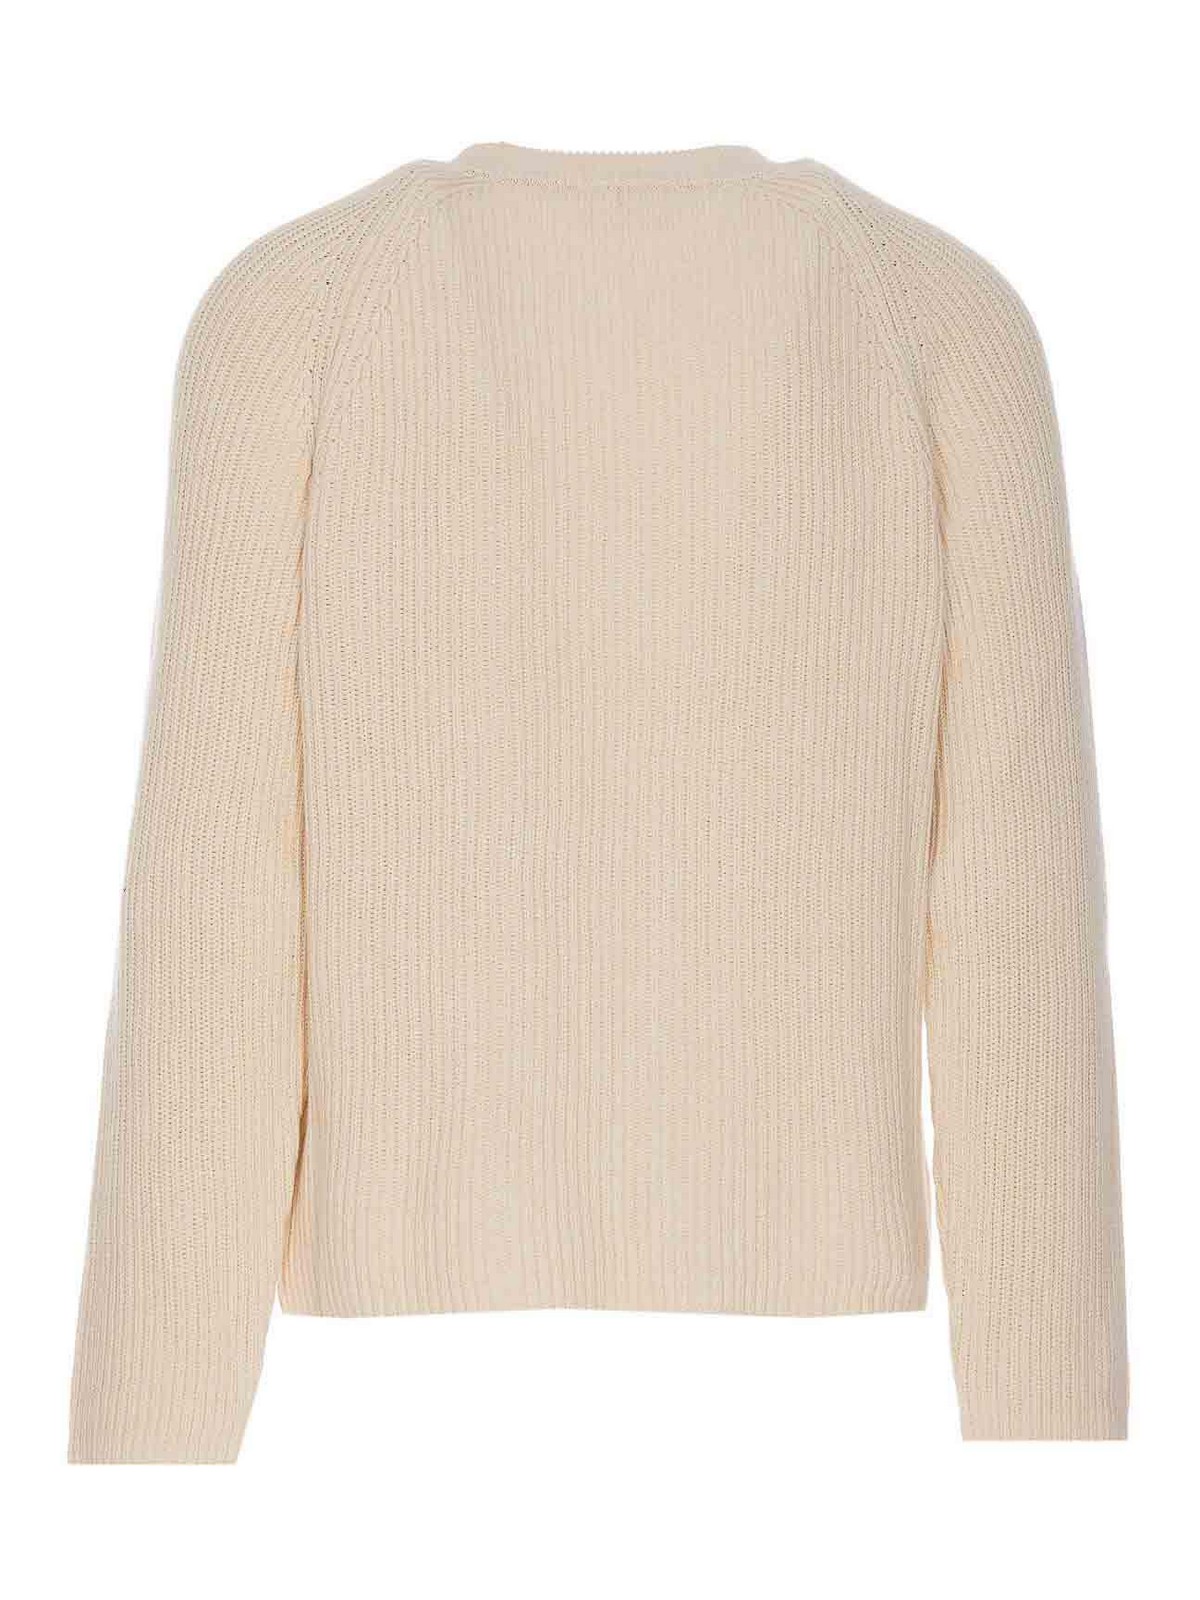 Shop Ami Alexandre Mattiussi Ami Label Sweater In White